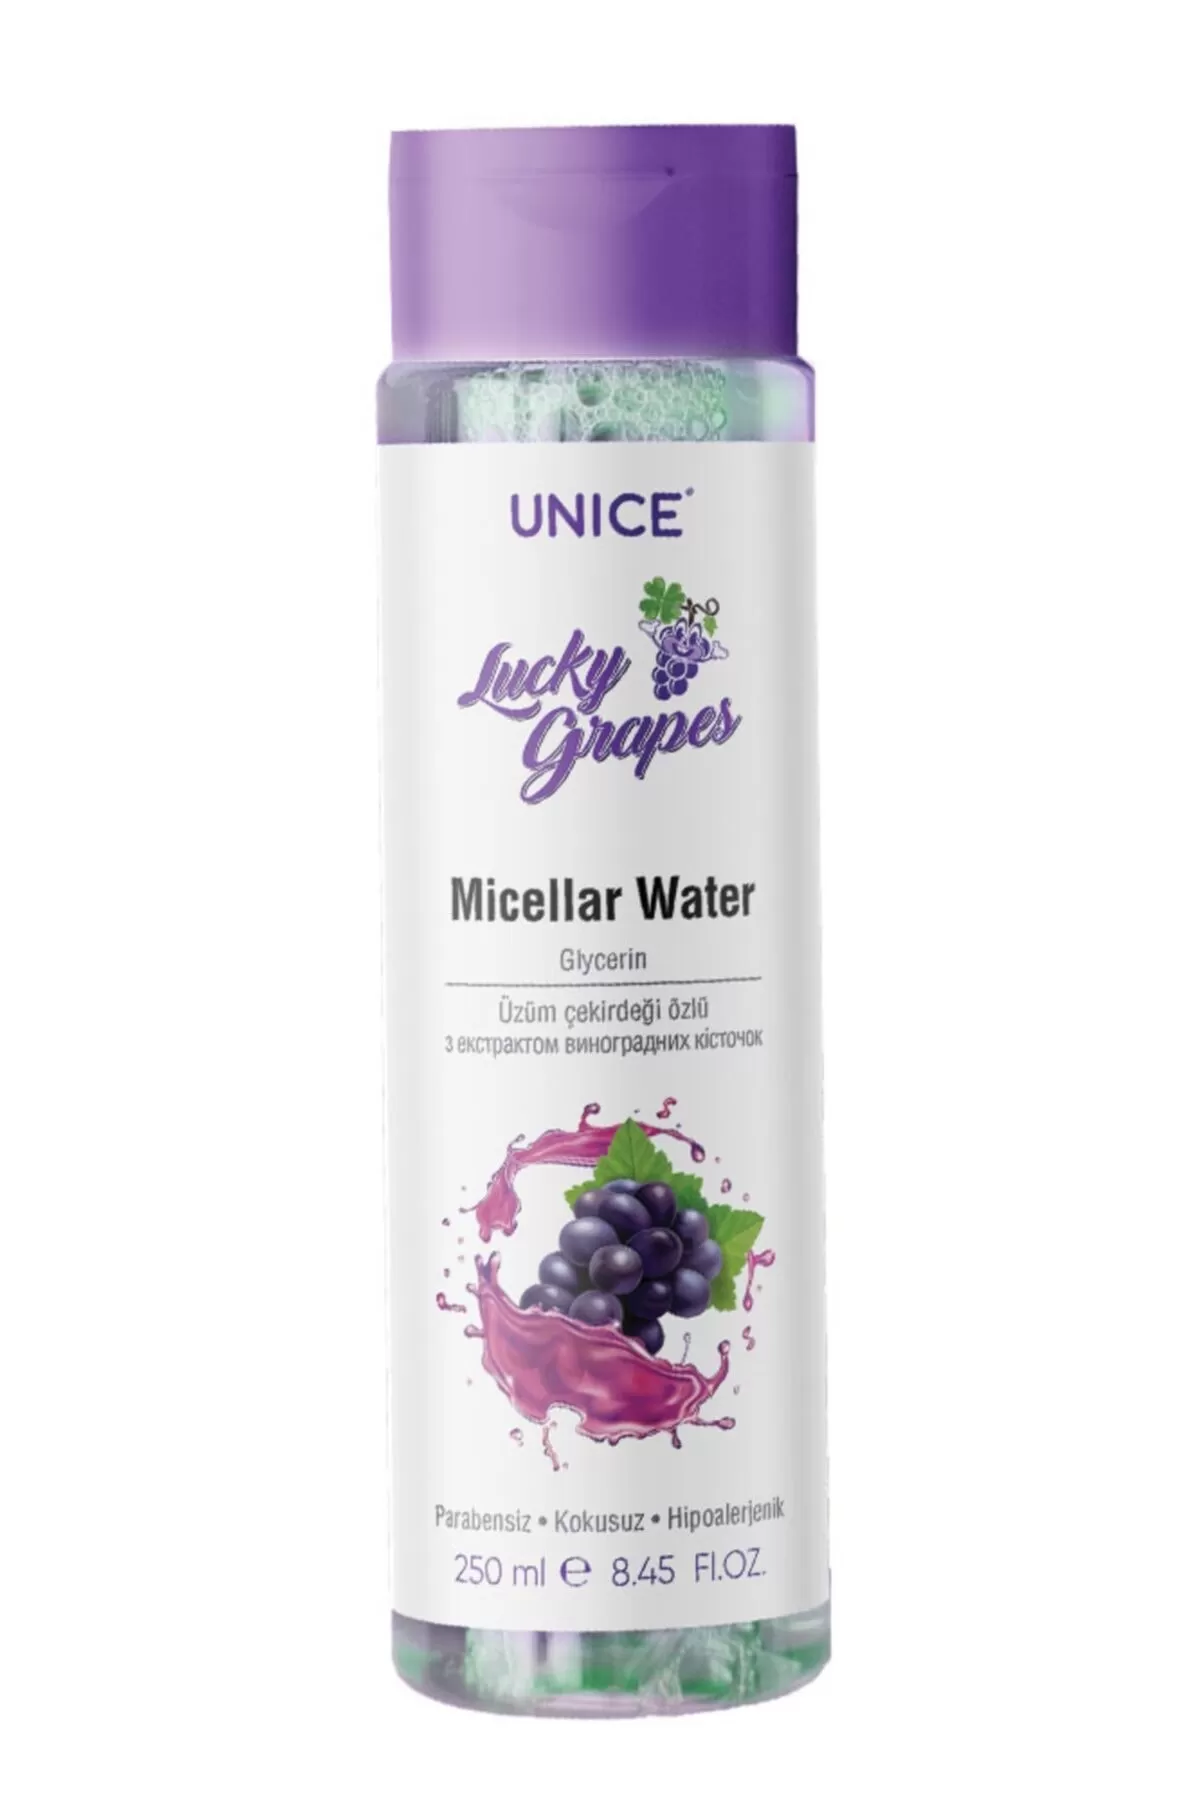 انتی اکسیدان قوی  بدون پارابن بدون عطر مناسب انواع پوست یونیک Unice میسلار واتر Lucky grapes